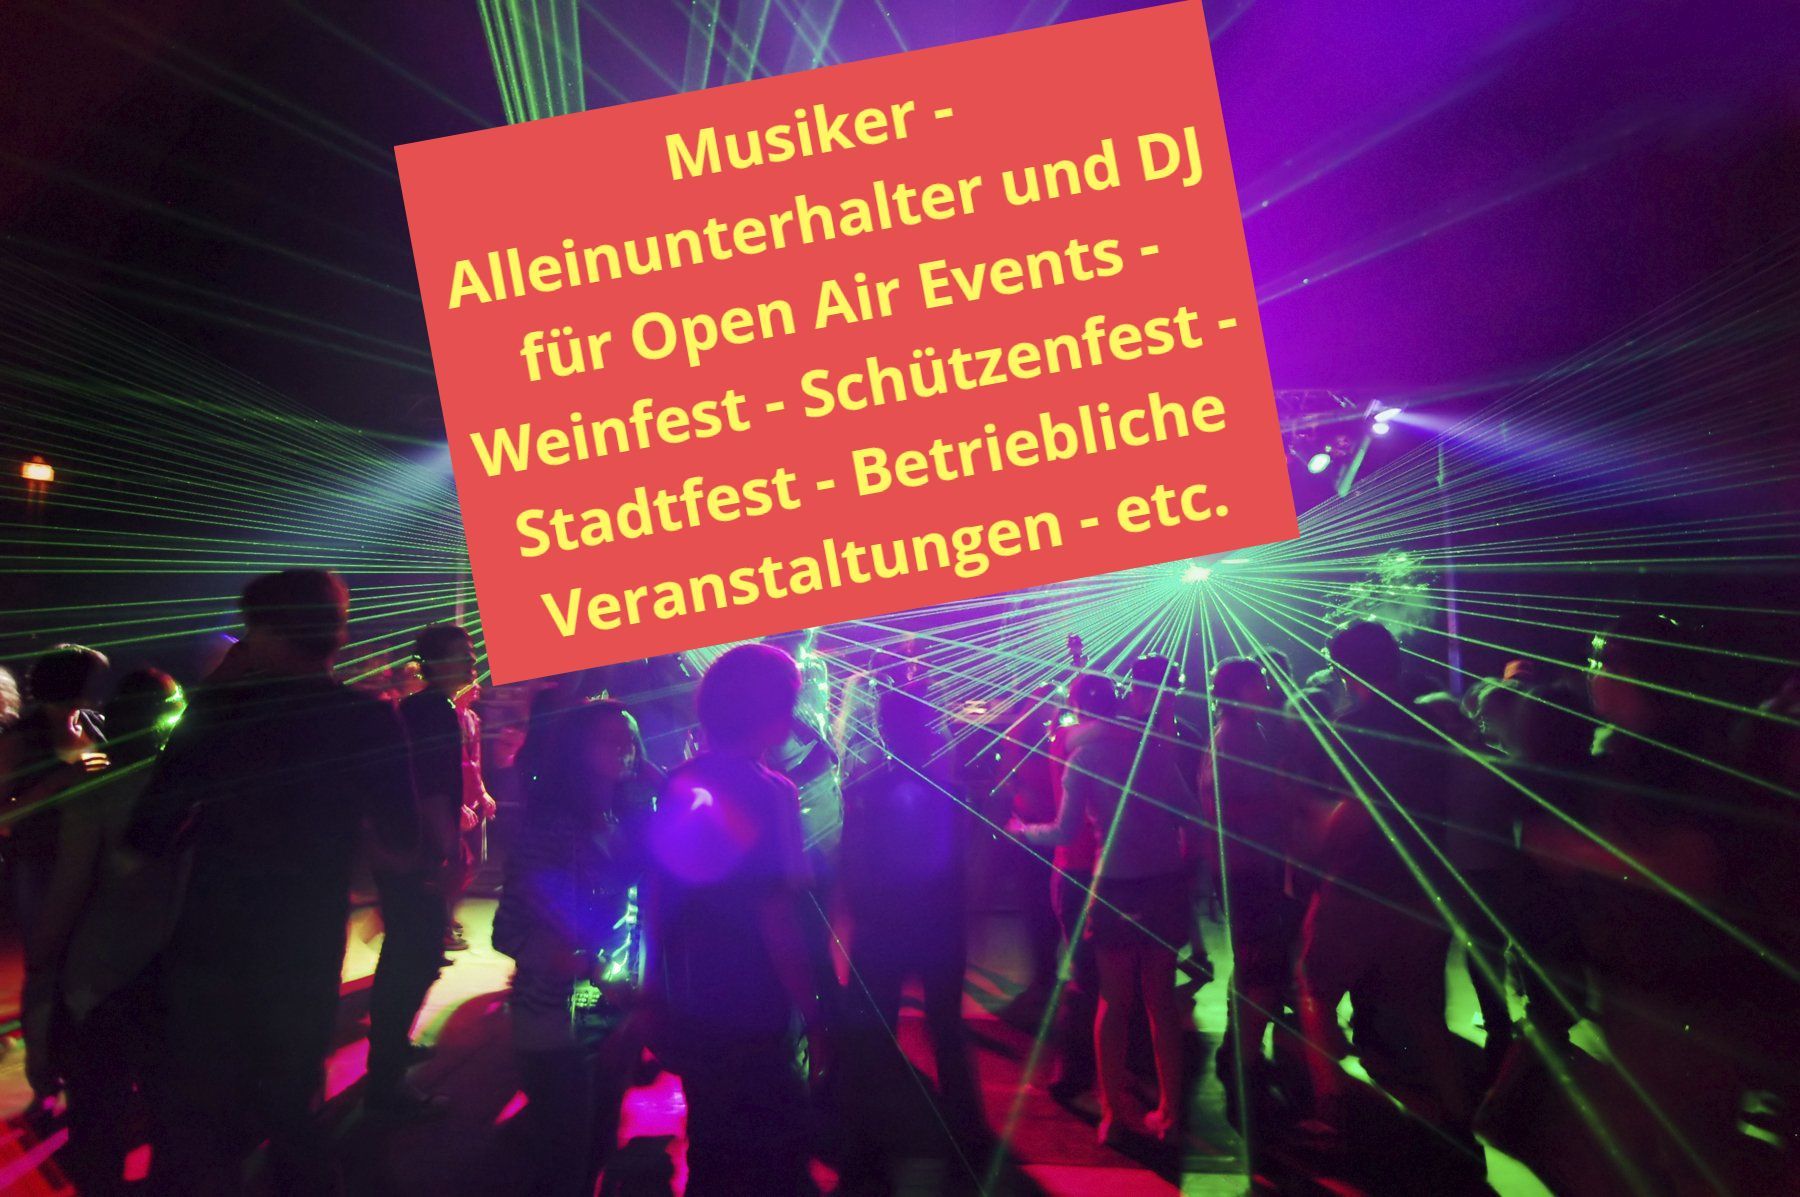 Open Air Event - Musiker für Schützenfest Weinfest Stadtfest